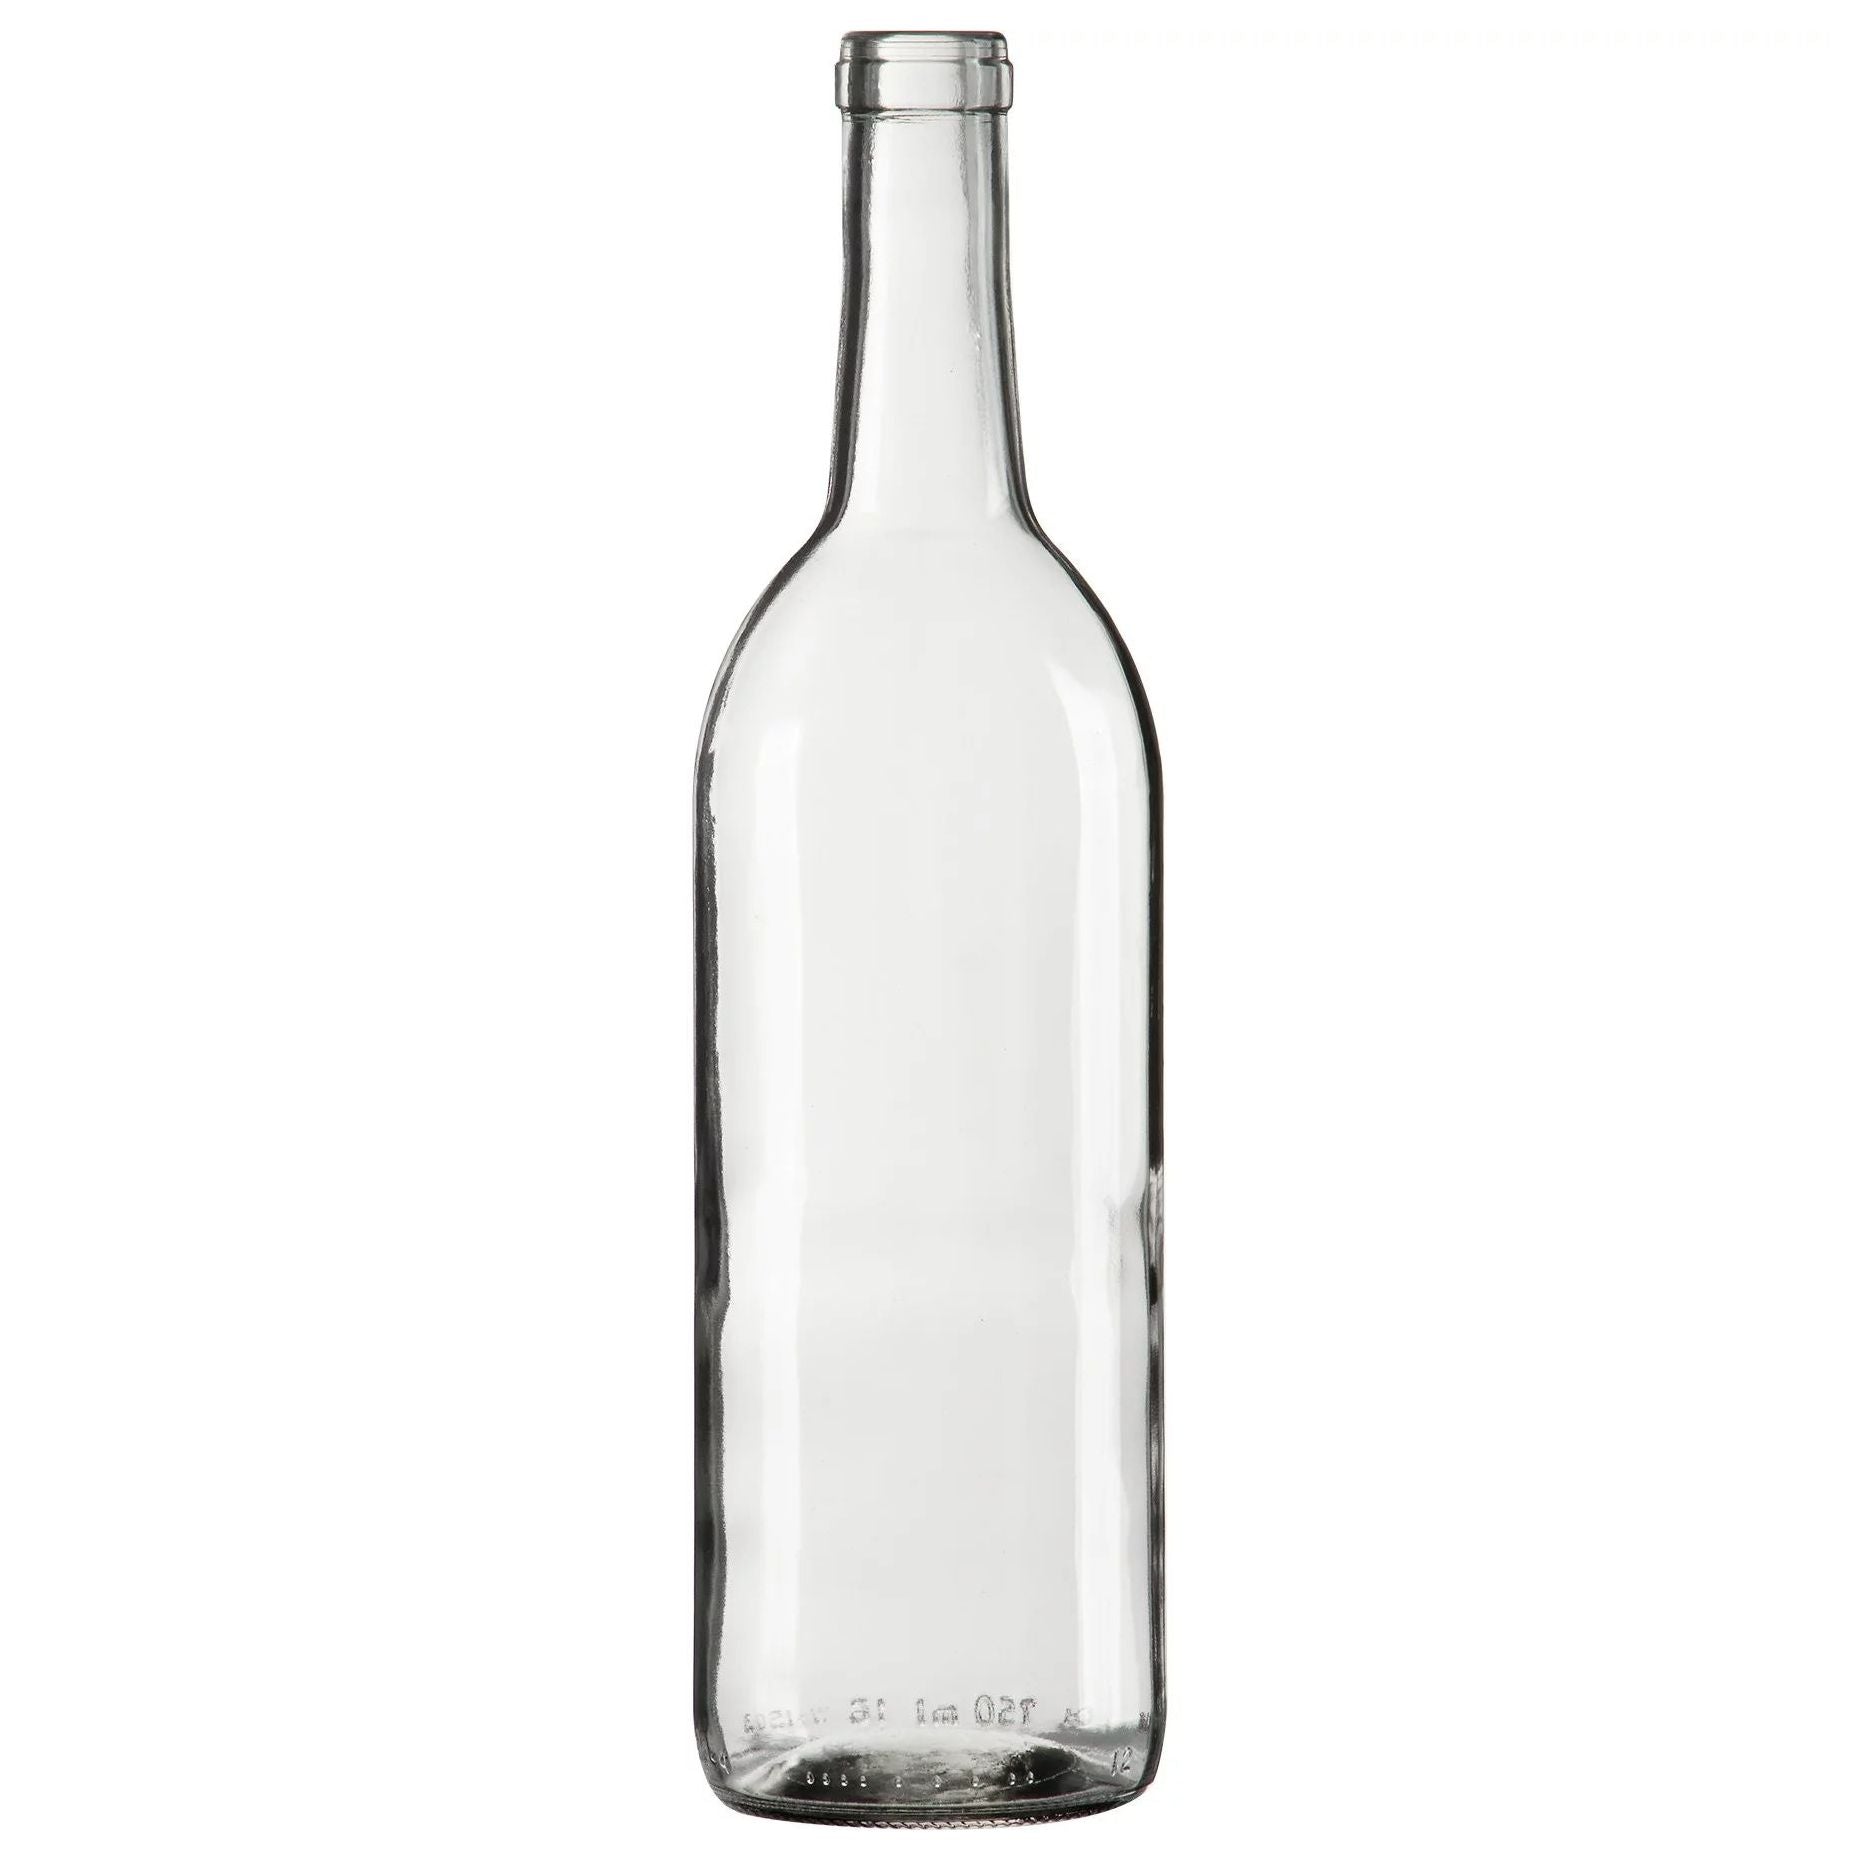 Bordeaux Wine Bottles - 750 ml, Clear, Flat Bottom - Case of 12